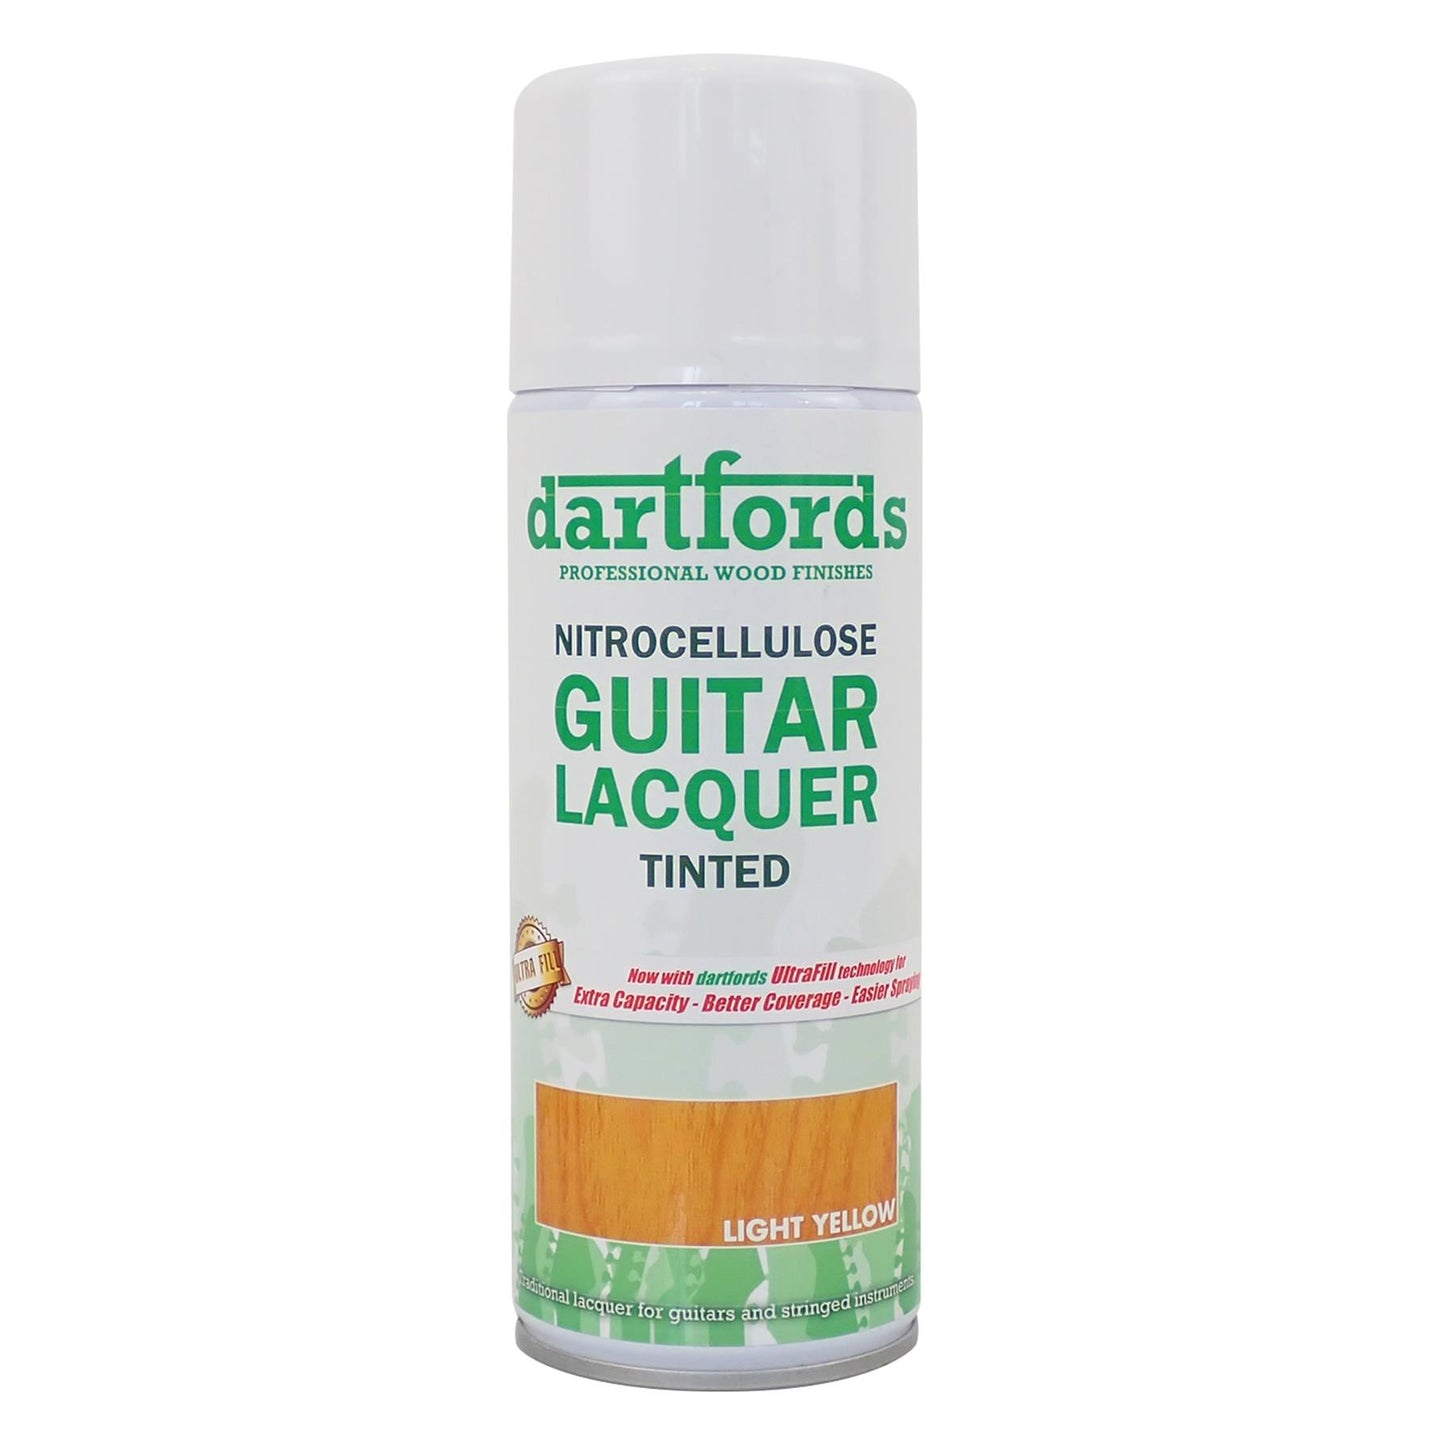 dartfords Light Yellow Nitrocellulose Guitar Lacquer - 400ml Aerosol